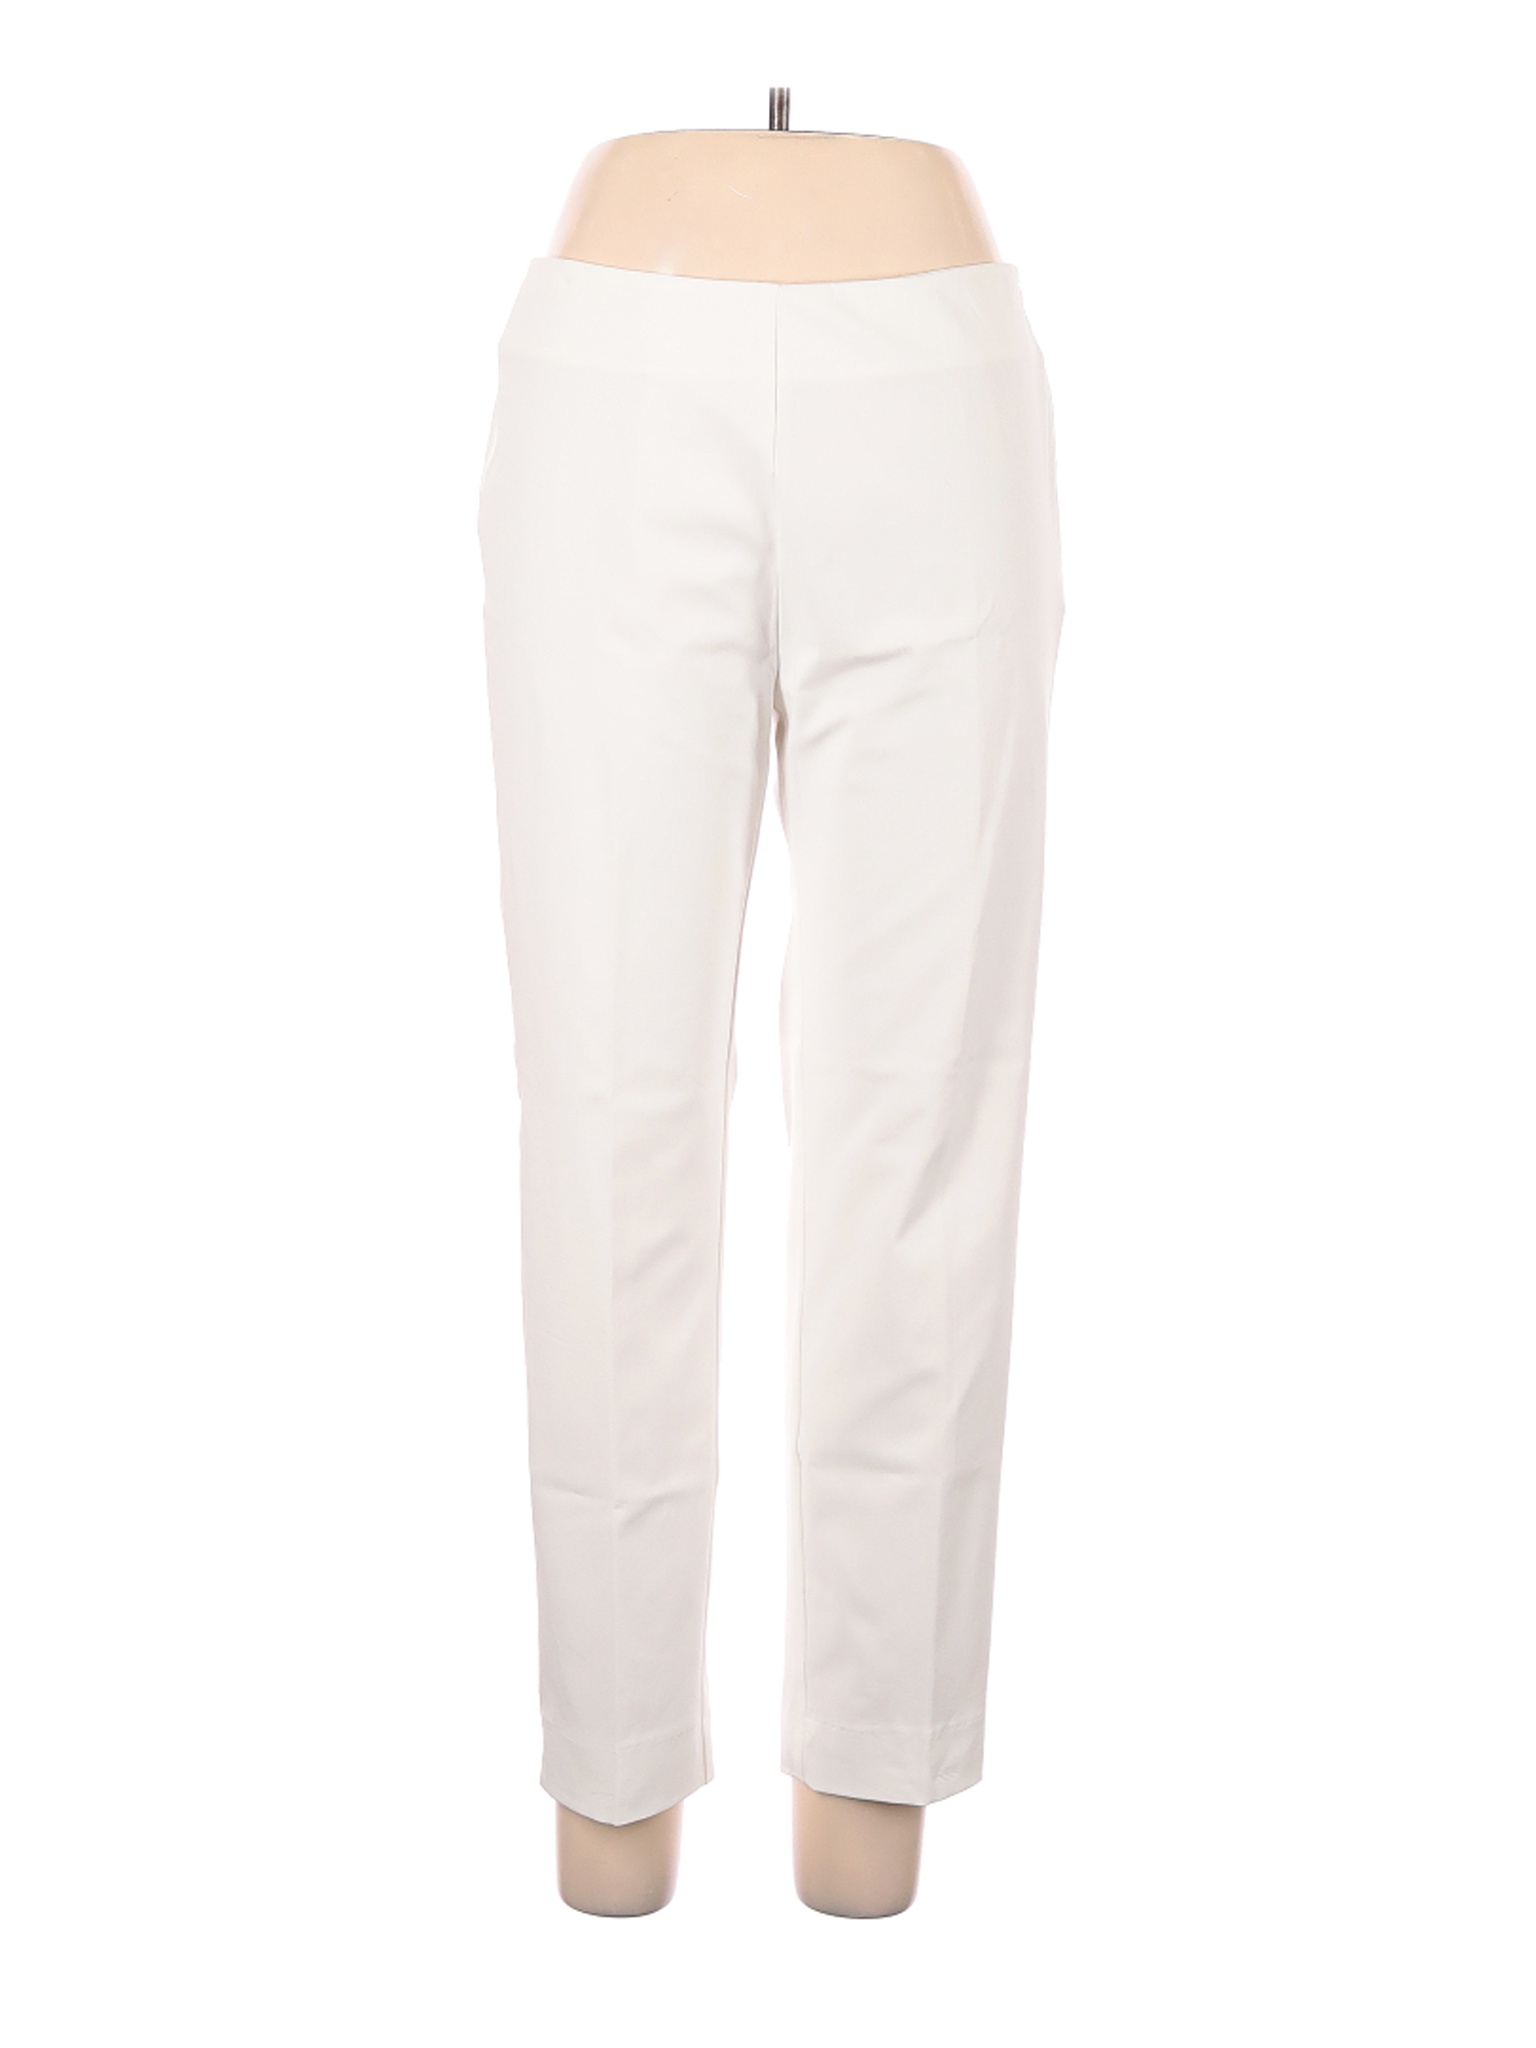 Estelle and Finn Women White Dress Pants 8 | eBay